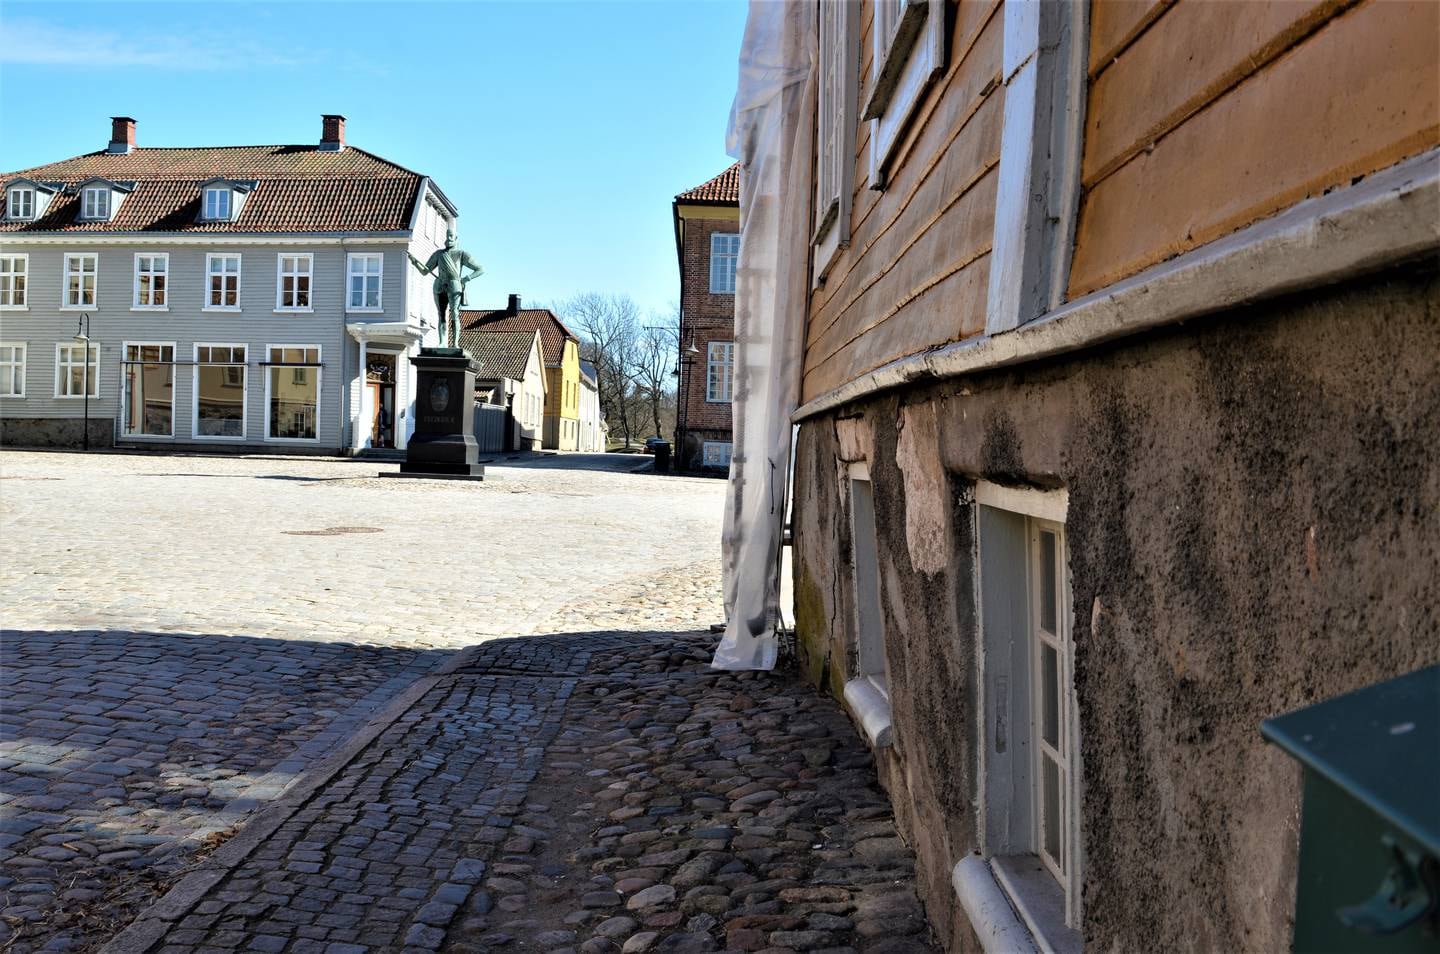 Dunkejongaarden fra 1784 er et av de aller eldste trehus som står i Gamlebyen. Det gjør restaureringsarbeidene krevende.